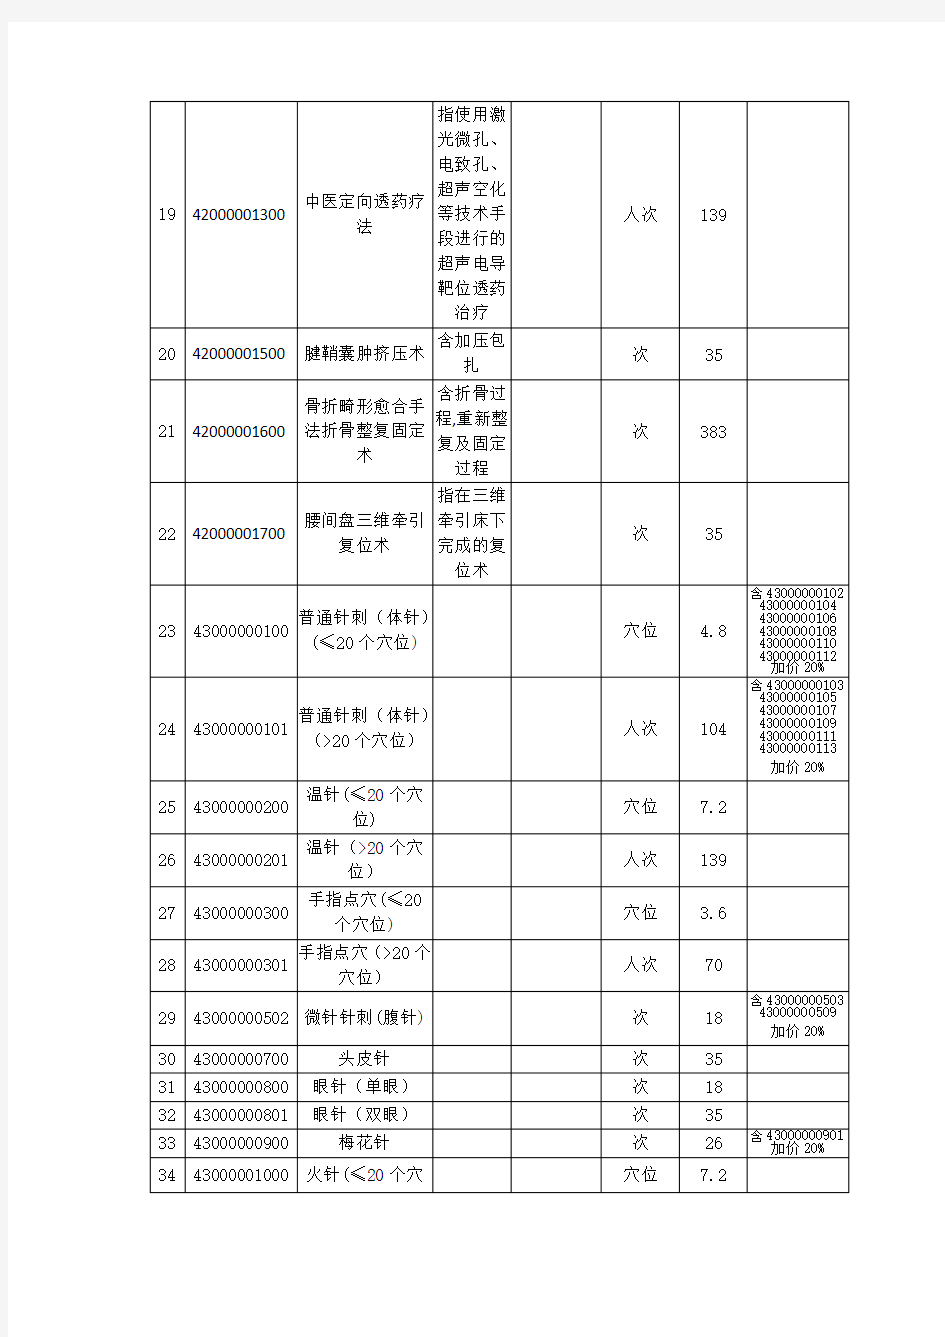 中医类医疗服务项目价格调整表